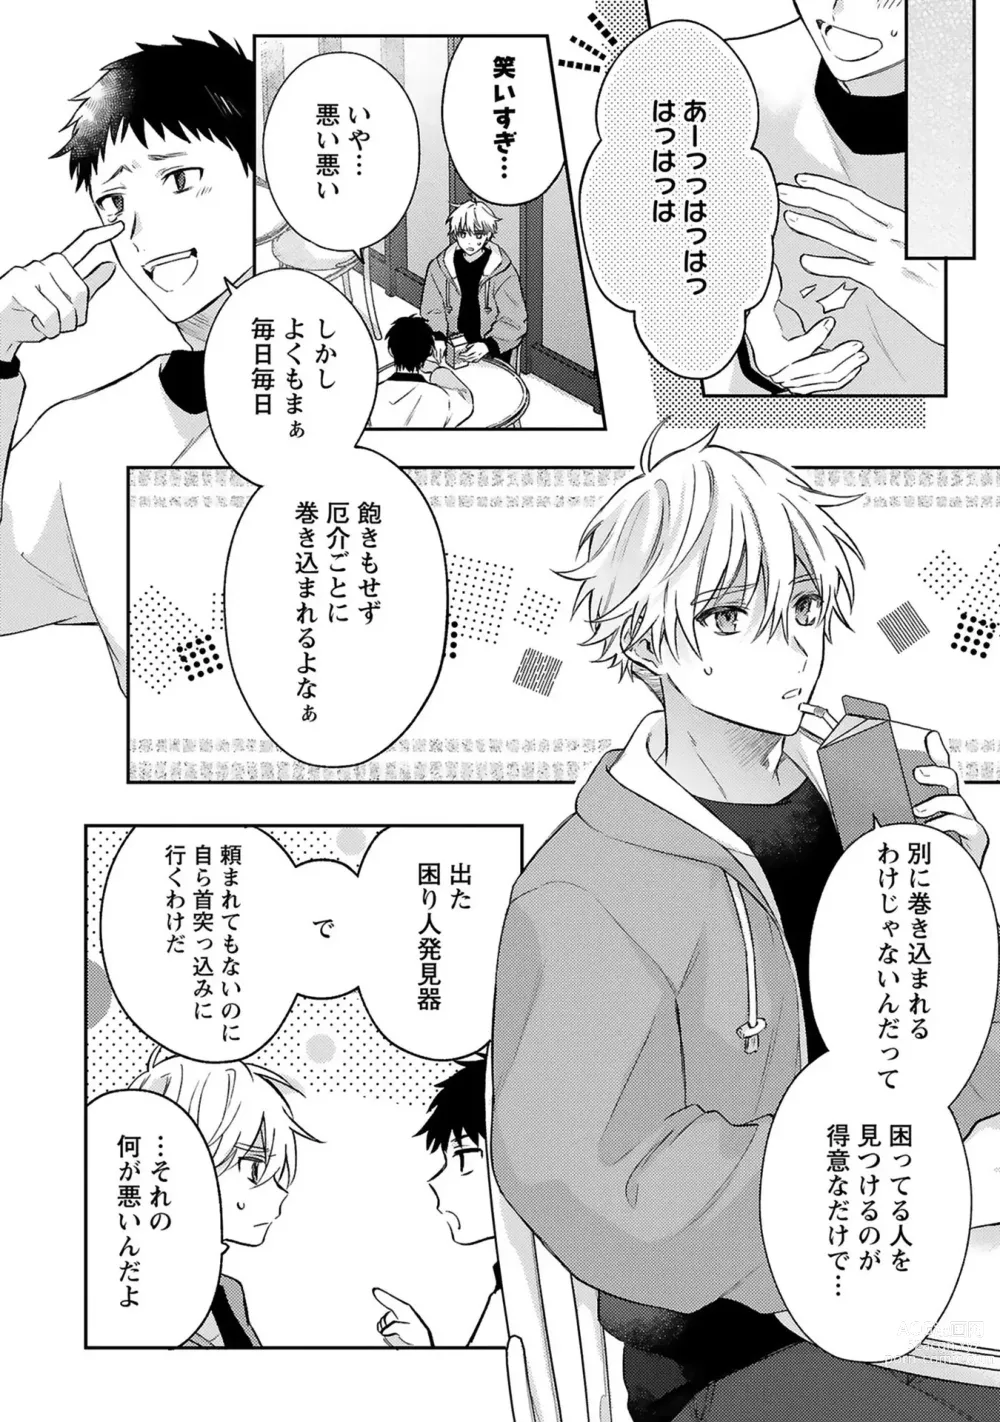 Page 8 of manga Sagashi Mono wa Kimi desu ka